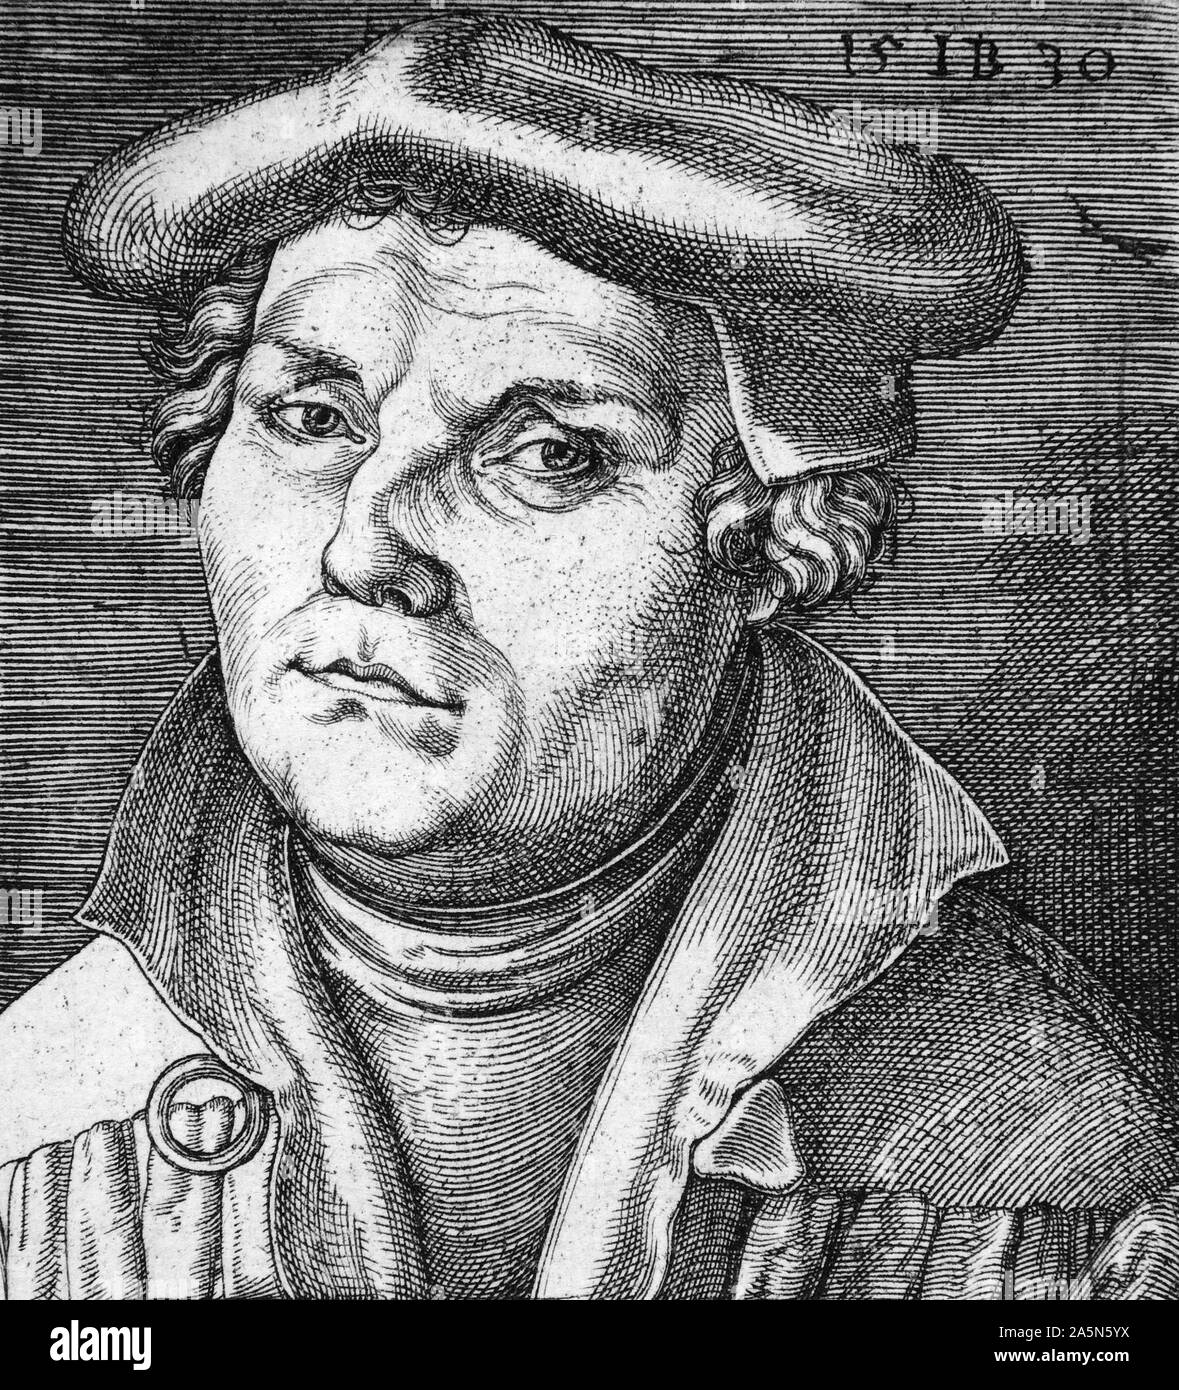 1530 Kupferstich von Martin Luther (1483-1546), deutscher Professor, Theologe, und Schlüsselfigur in der Protestantischen Reformation, sowie als Übersetzer der Bibel in die deutsche Sprache. Stockfoto